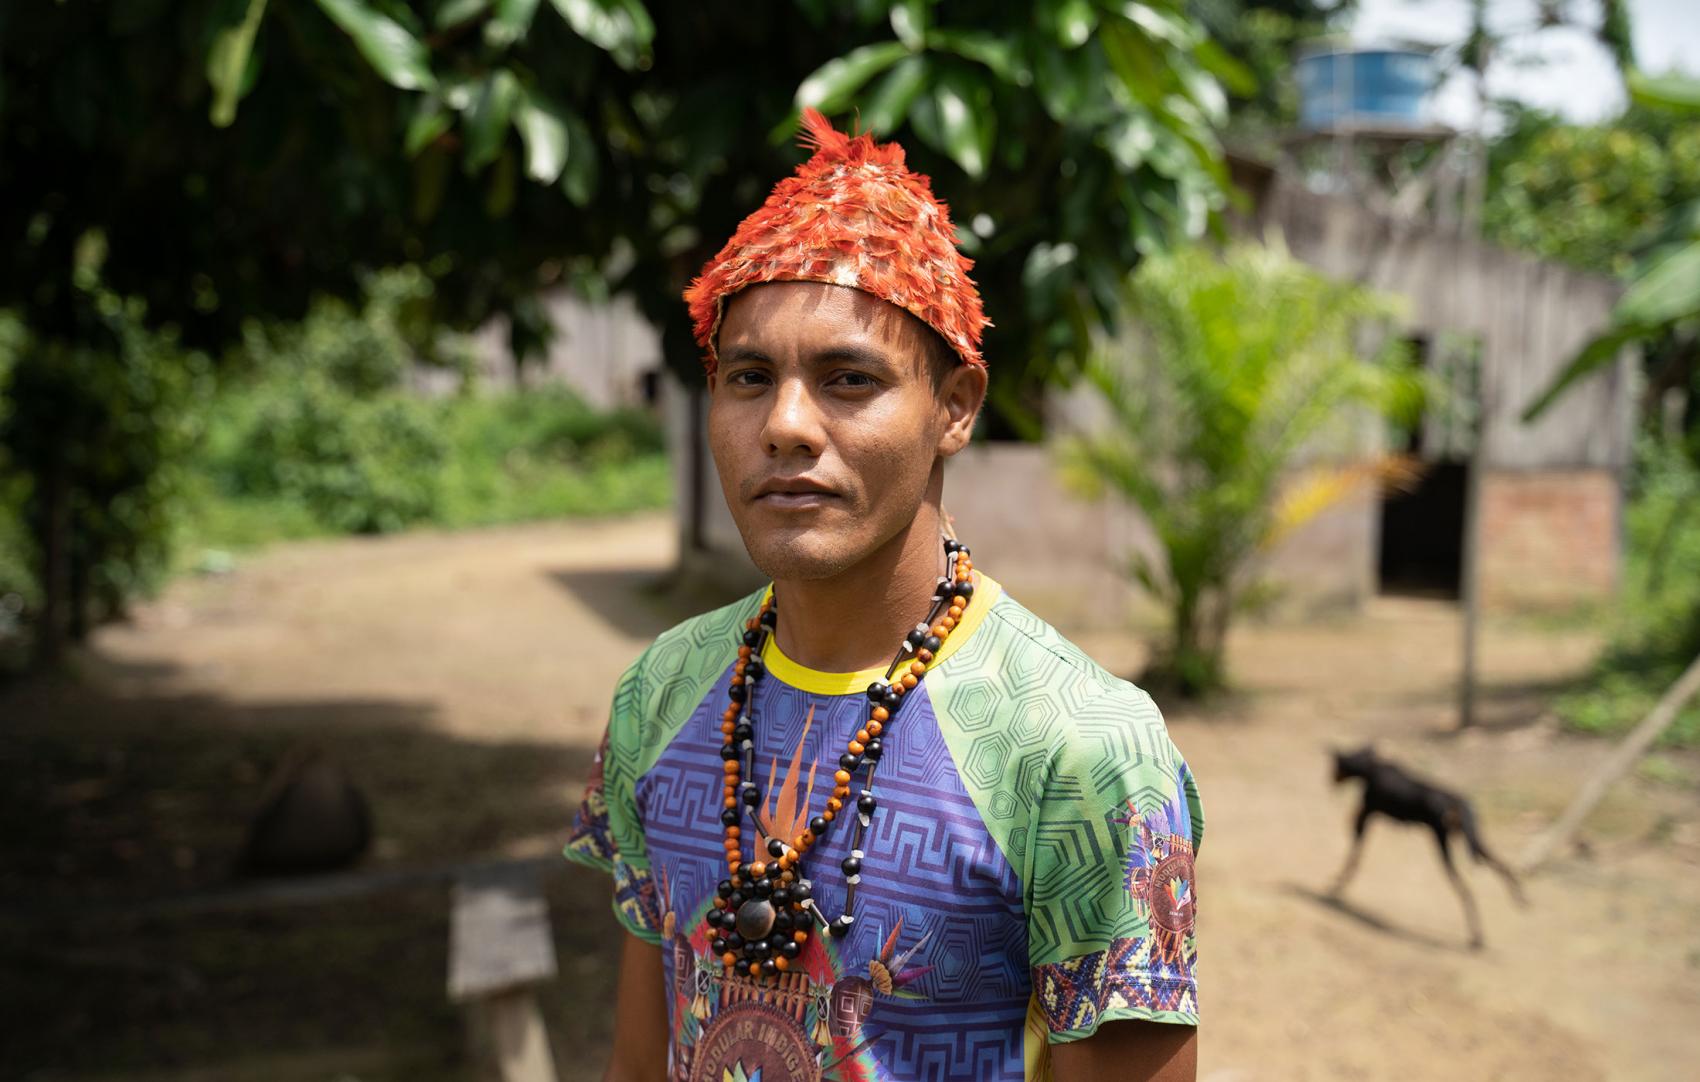 Chief Josenildo Munduruku from the Munduruku tribe